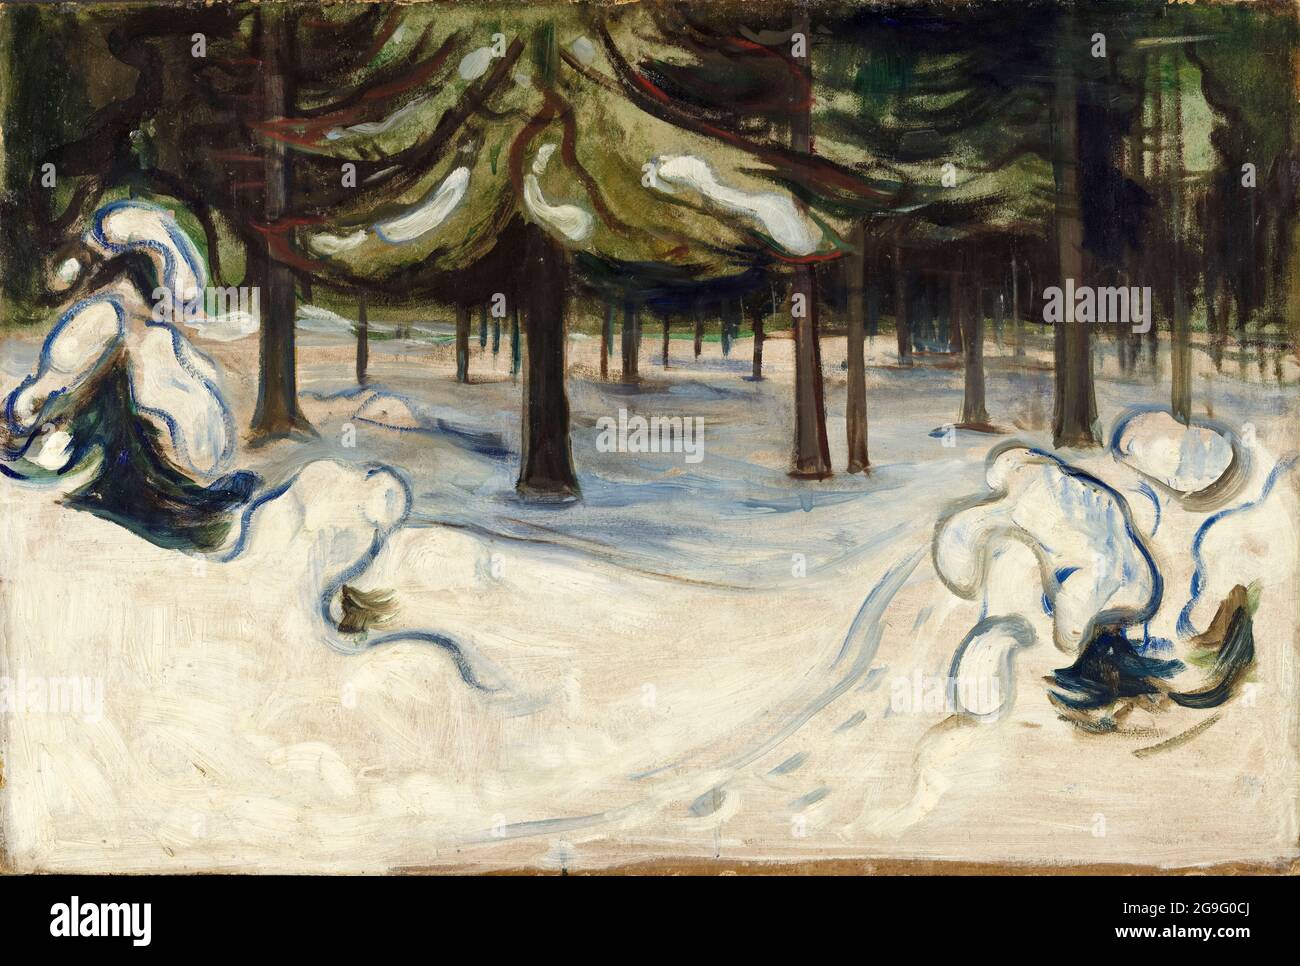 Hiver, peinture de paysage par Edvard Munch, 1899 Banque D'Images